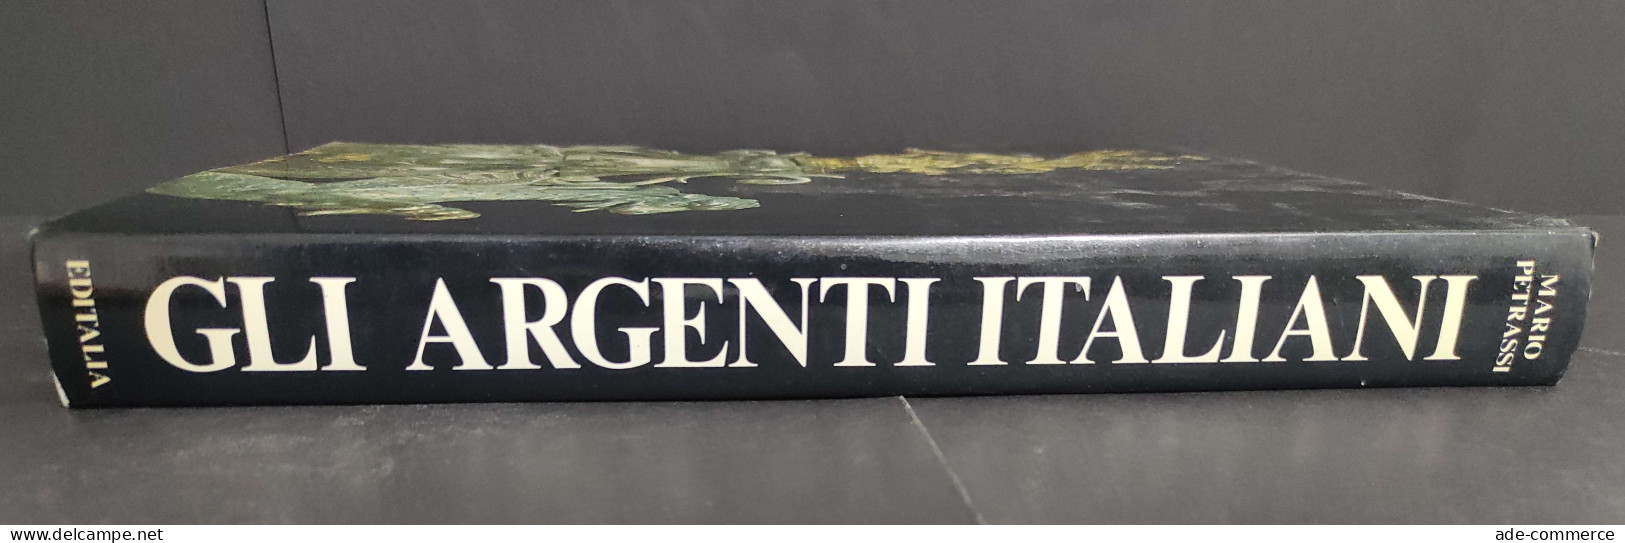 Gli Argenti Italiani - M. Petrassi - Ed. Editalia - 1984                                                                 - Arte, Antigüedades